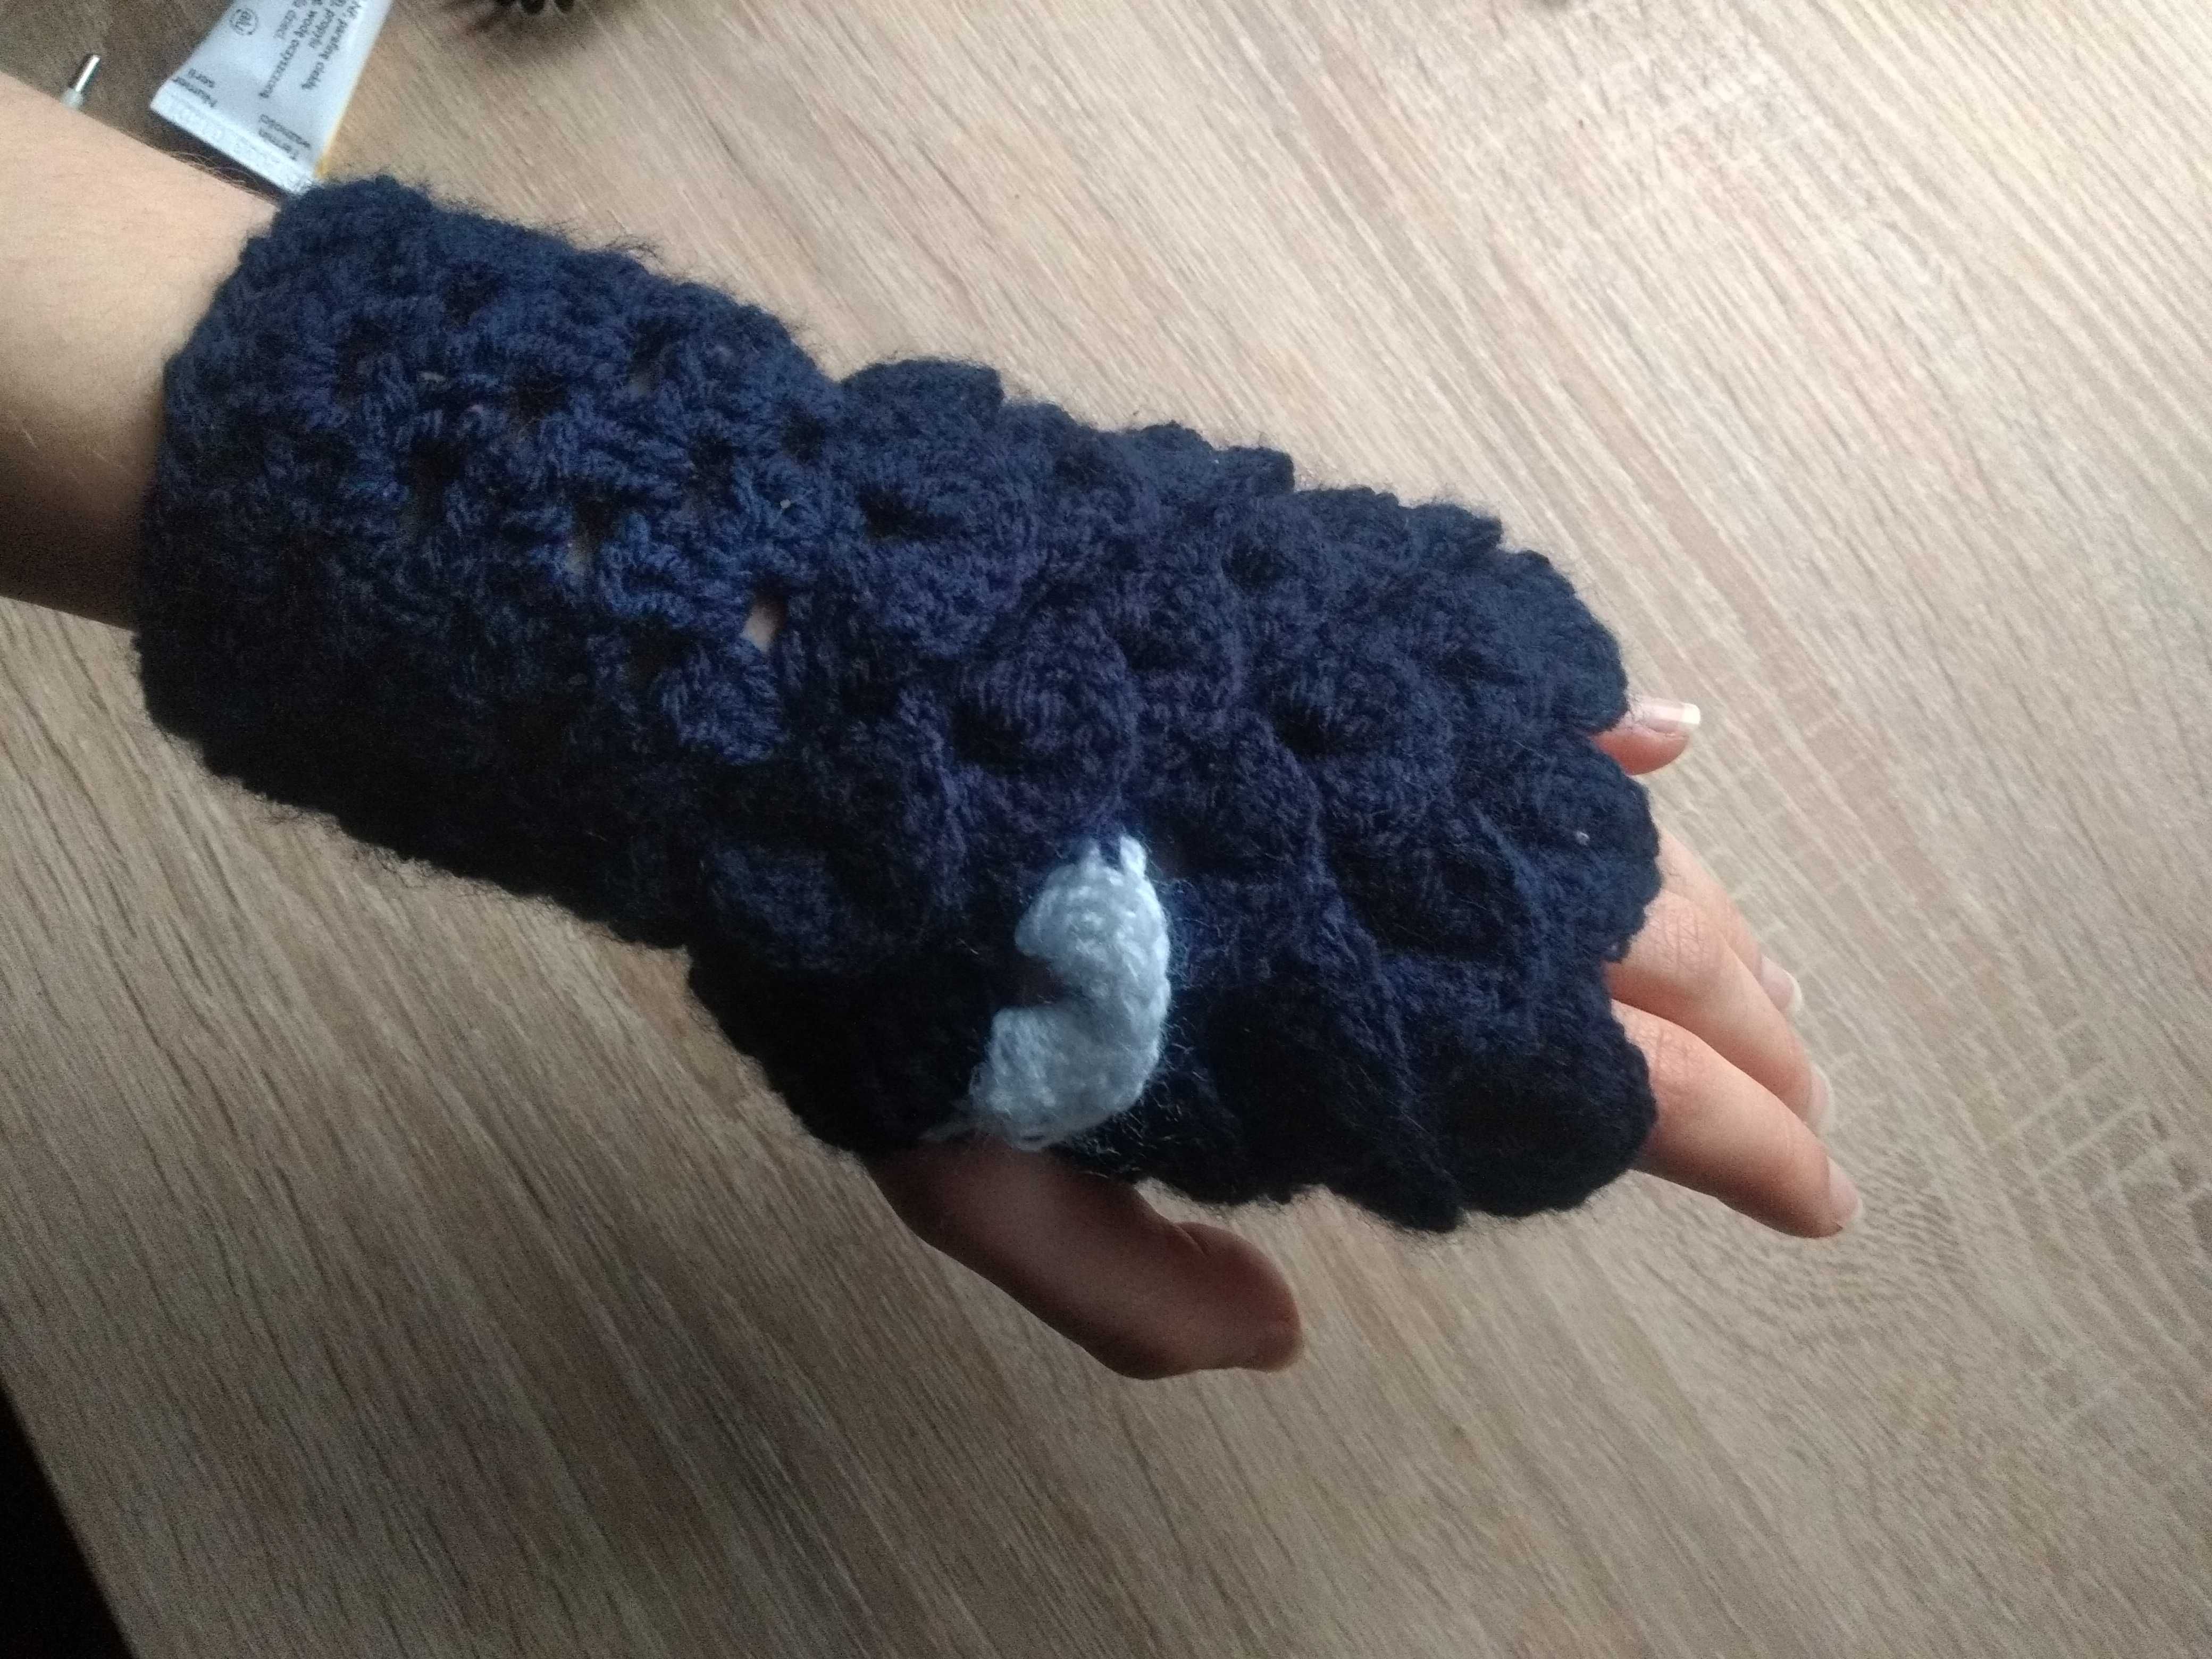 Rękawiczki bez palców